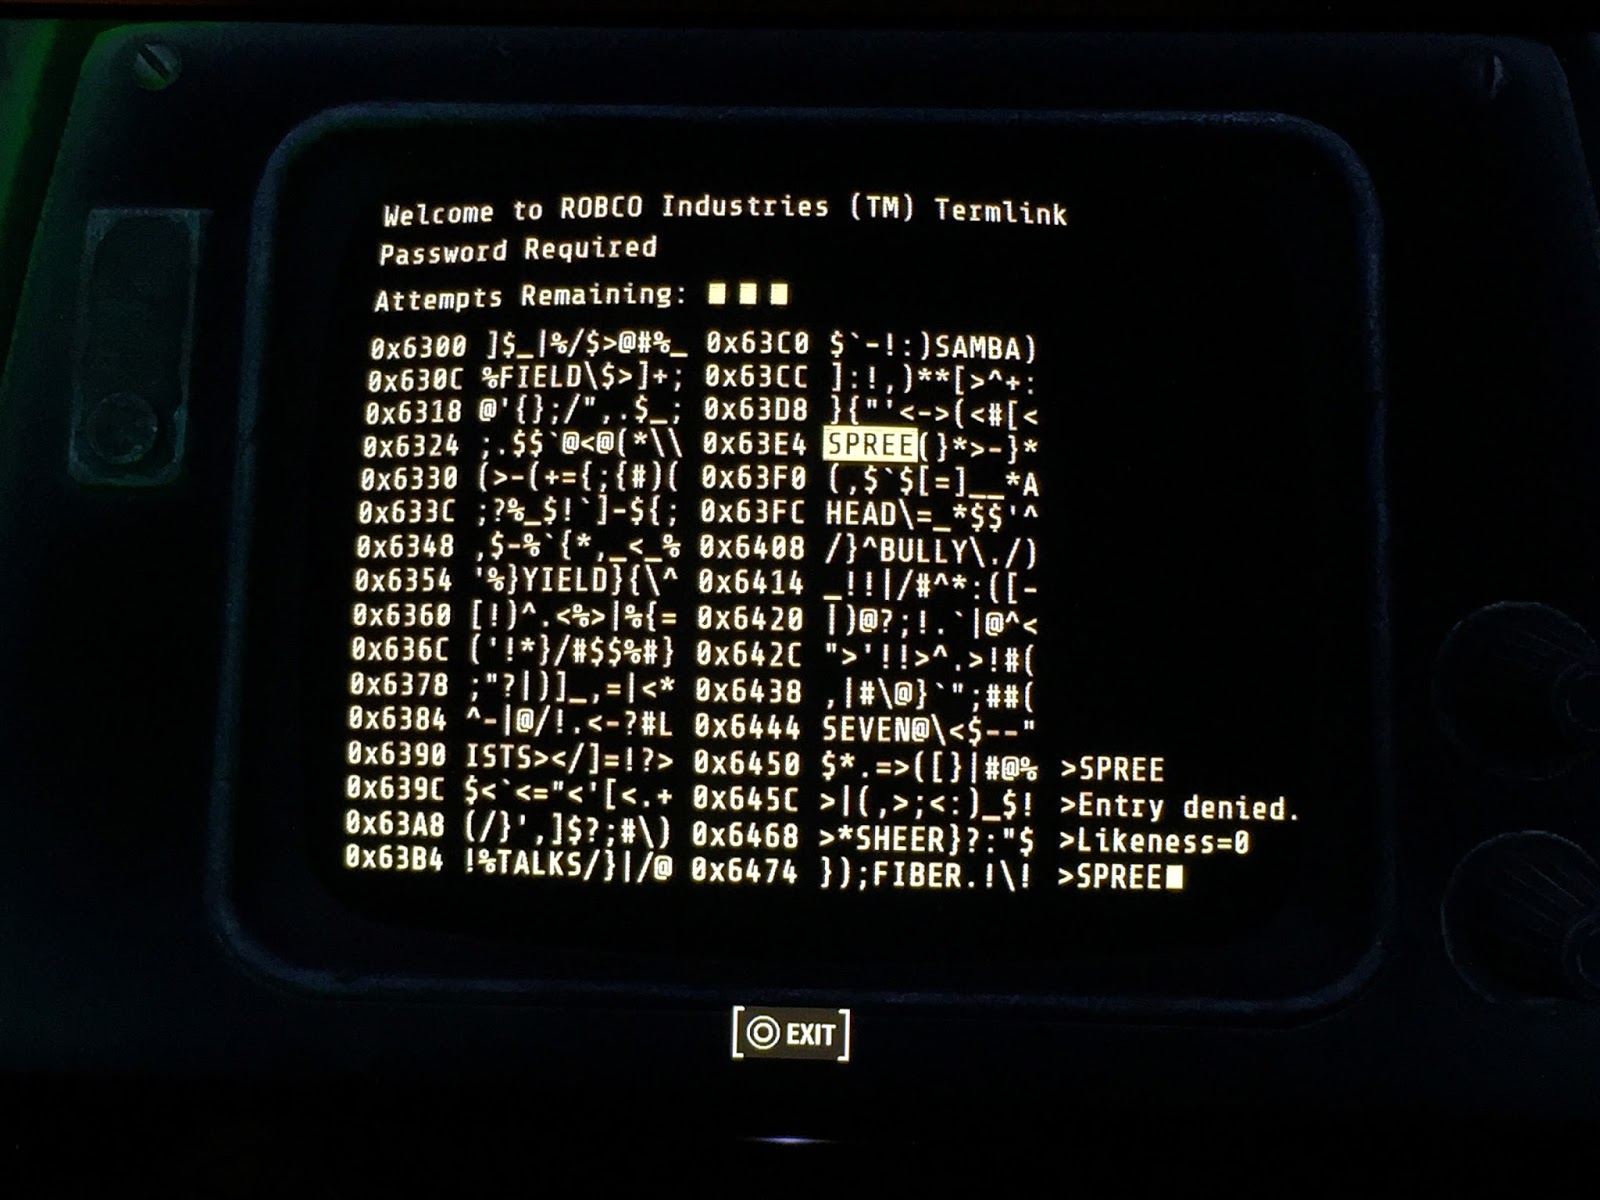 Fallout 4 Terminal Hacking. Пароль от терминала Fallout 4 робко Индастриз. How to Hack Terminals in Fallout. Чит терминал